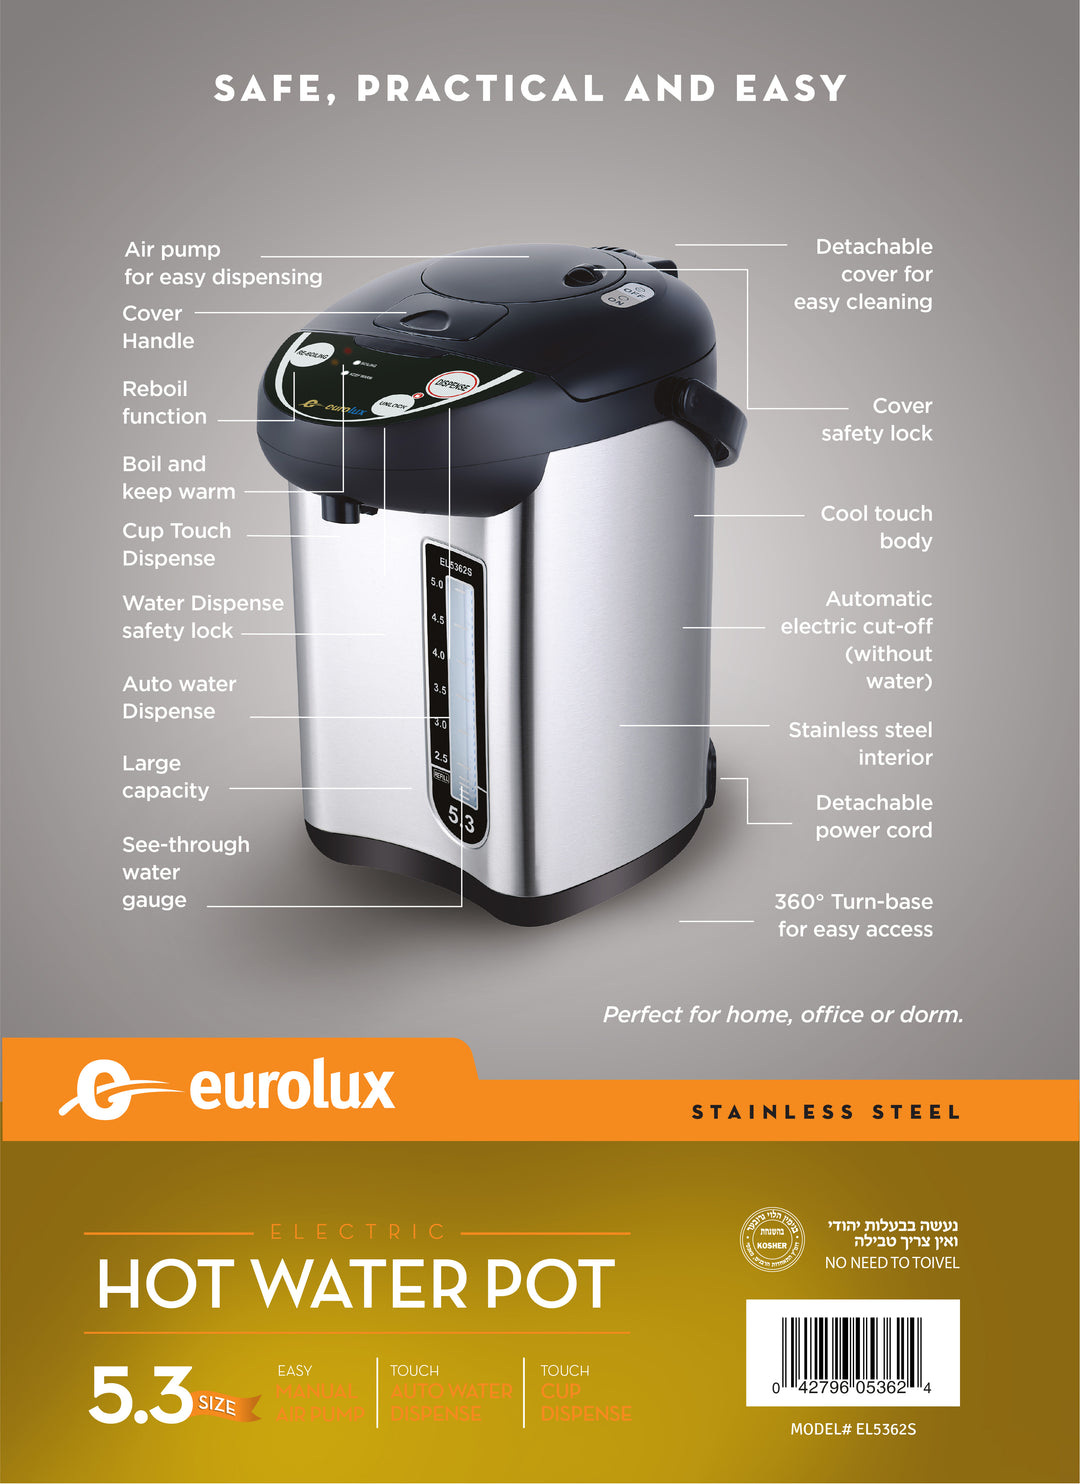 EUROLUX ELECTRIC HOT WATER POT 5.3 QT MODEL# EL5362S